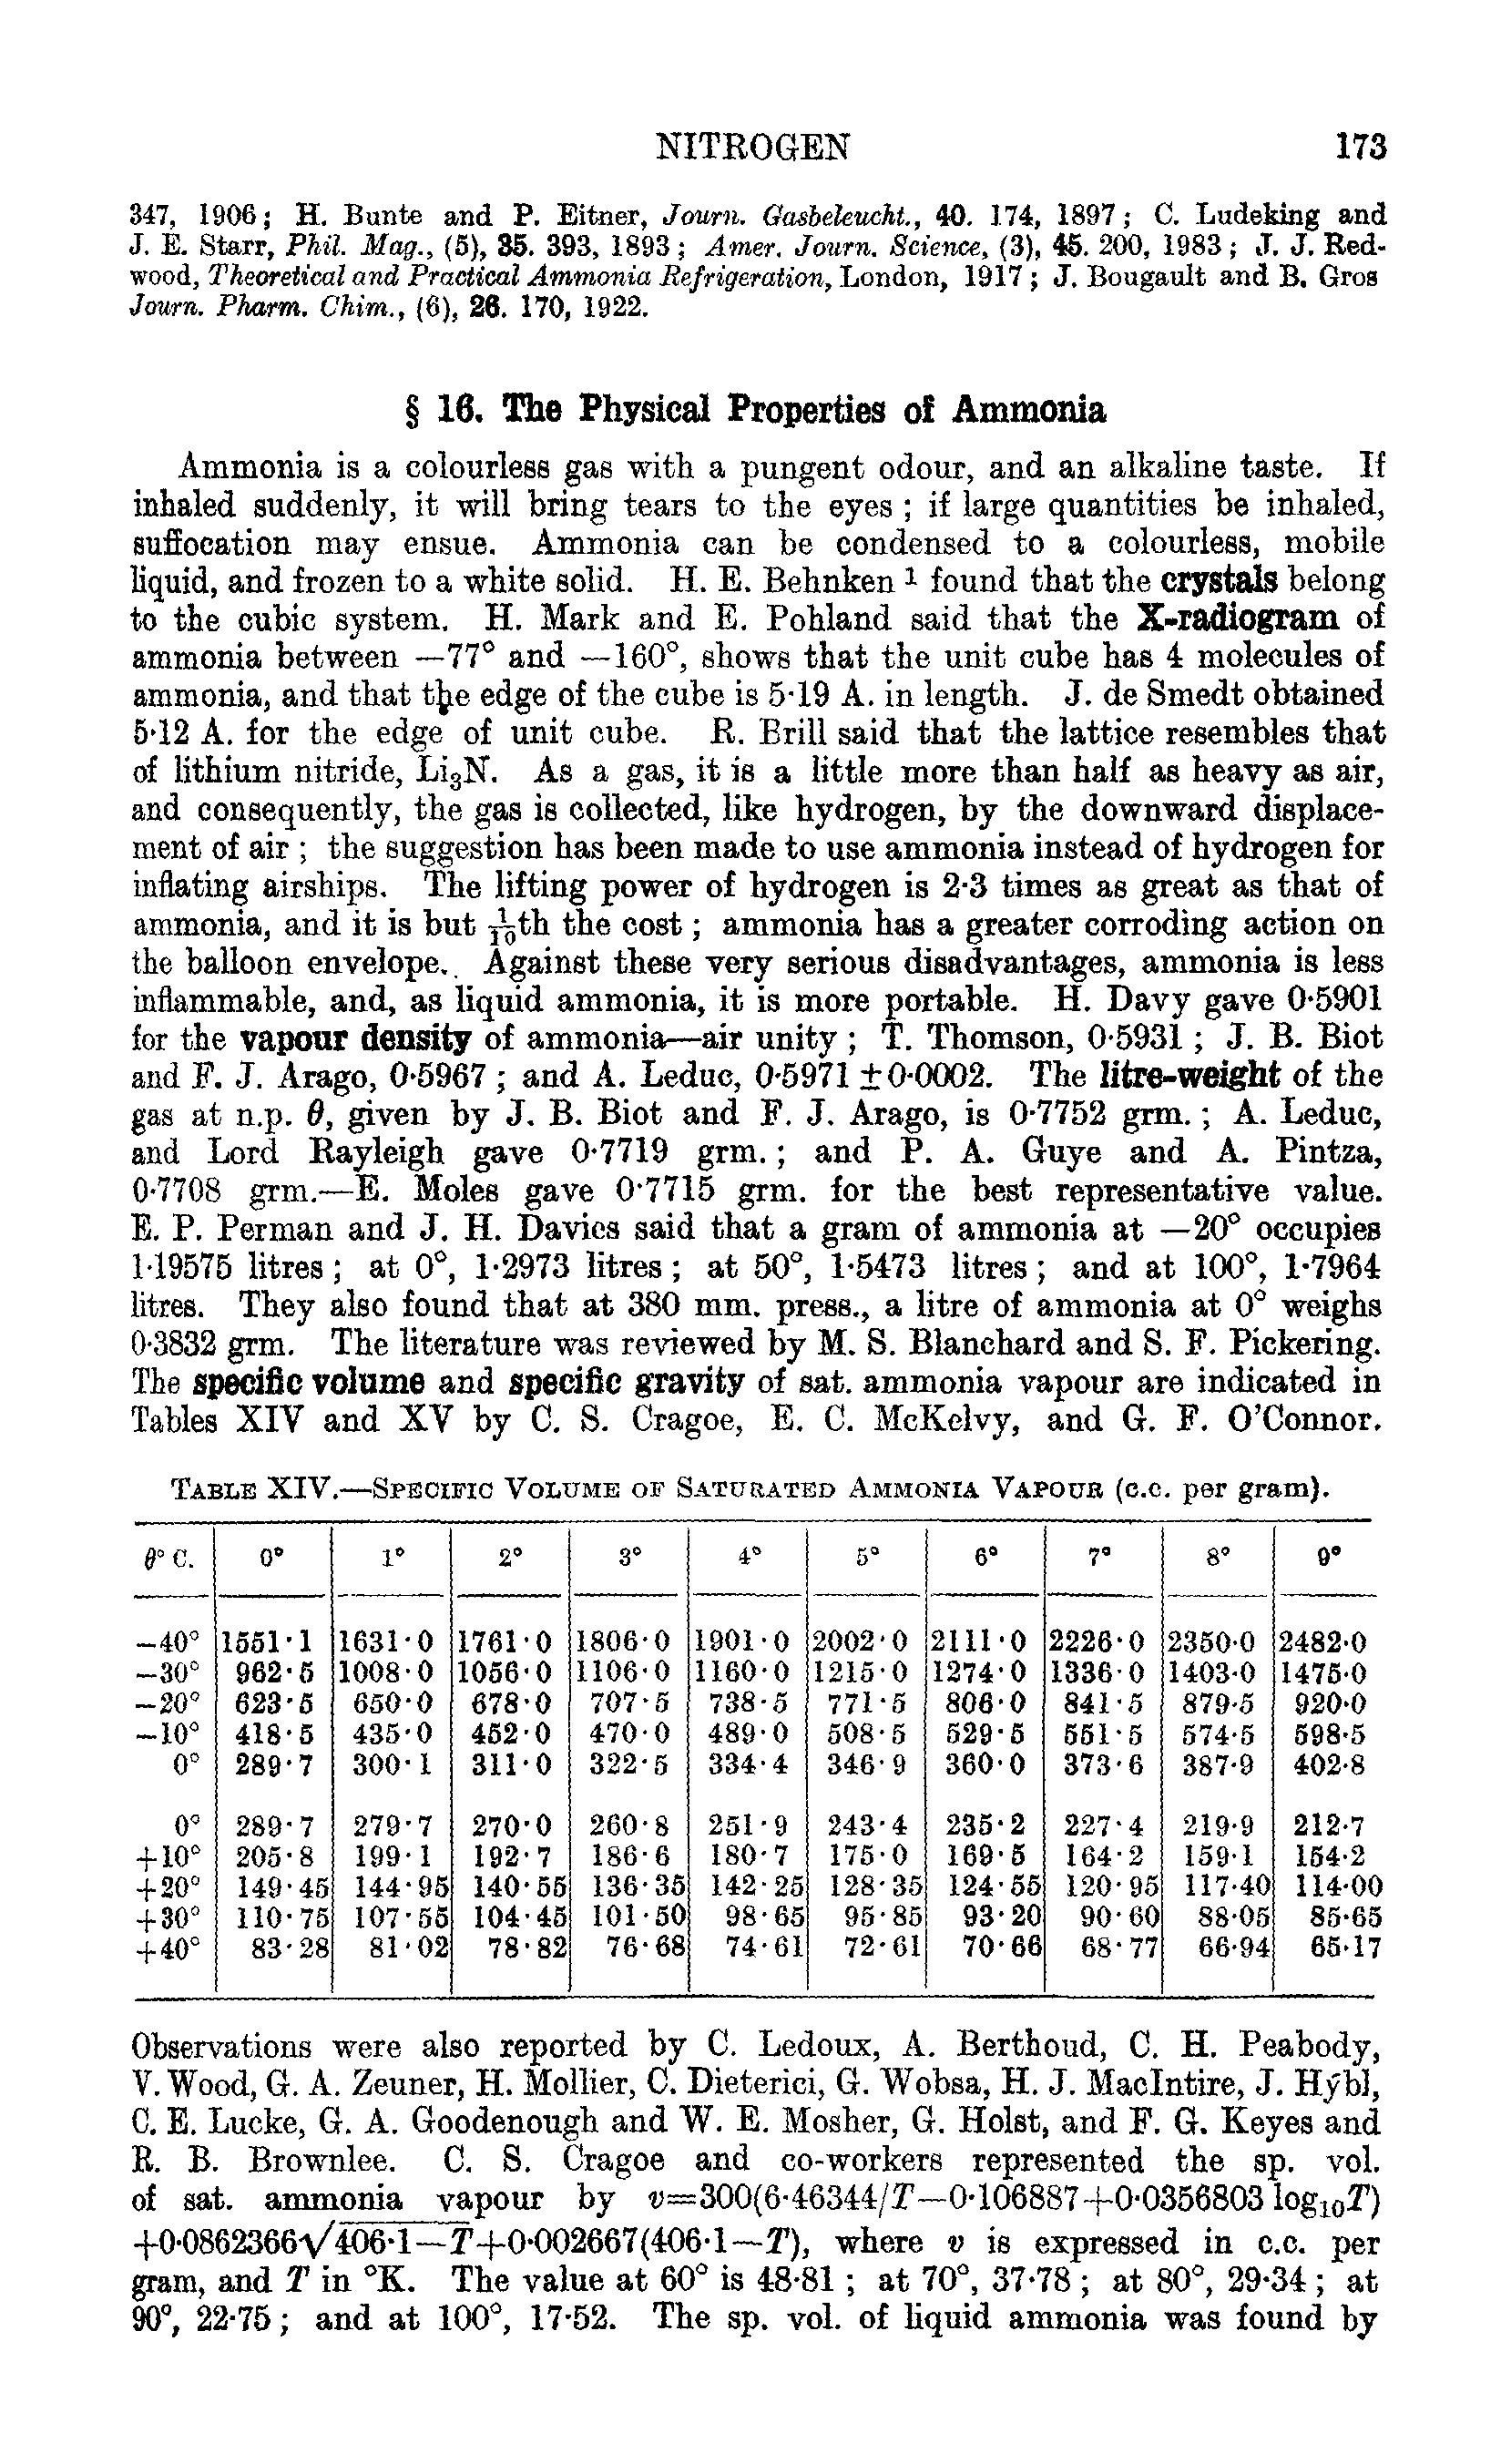 Table XIV.—Specific Volume of Saturated Ammonia Vapouk (c.c. per gram).